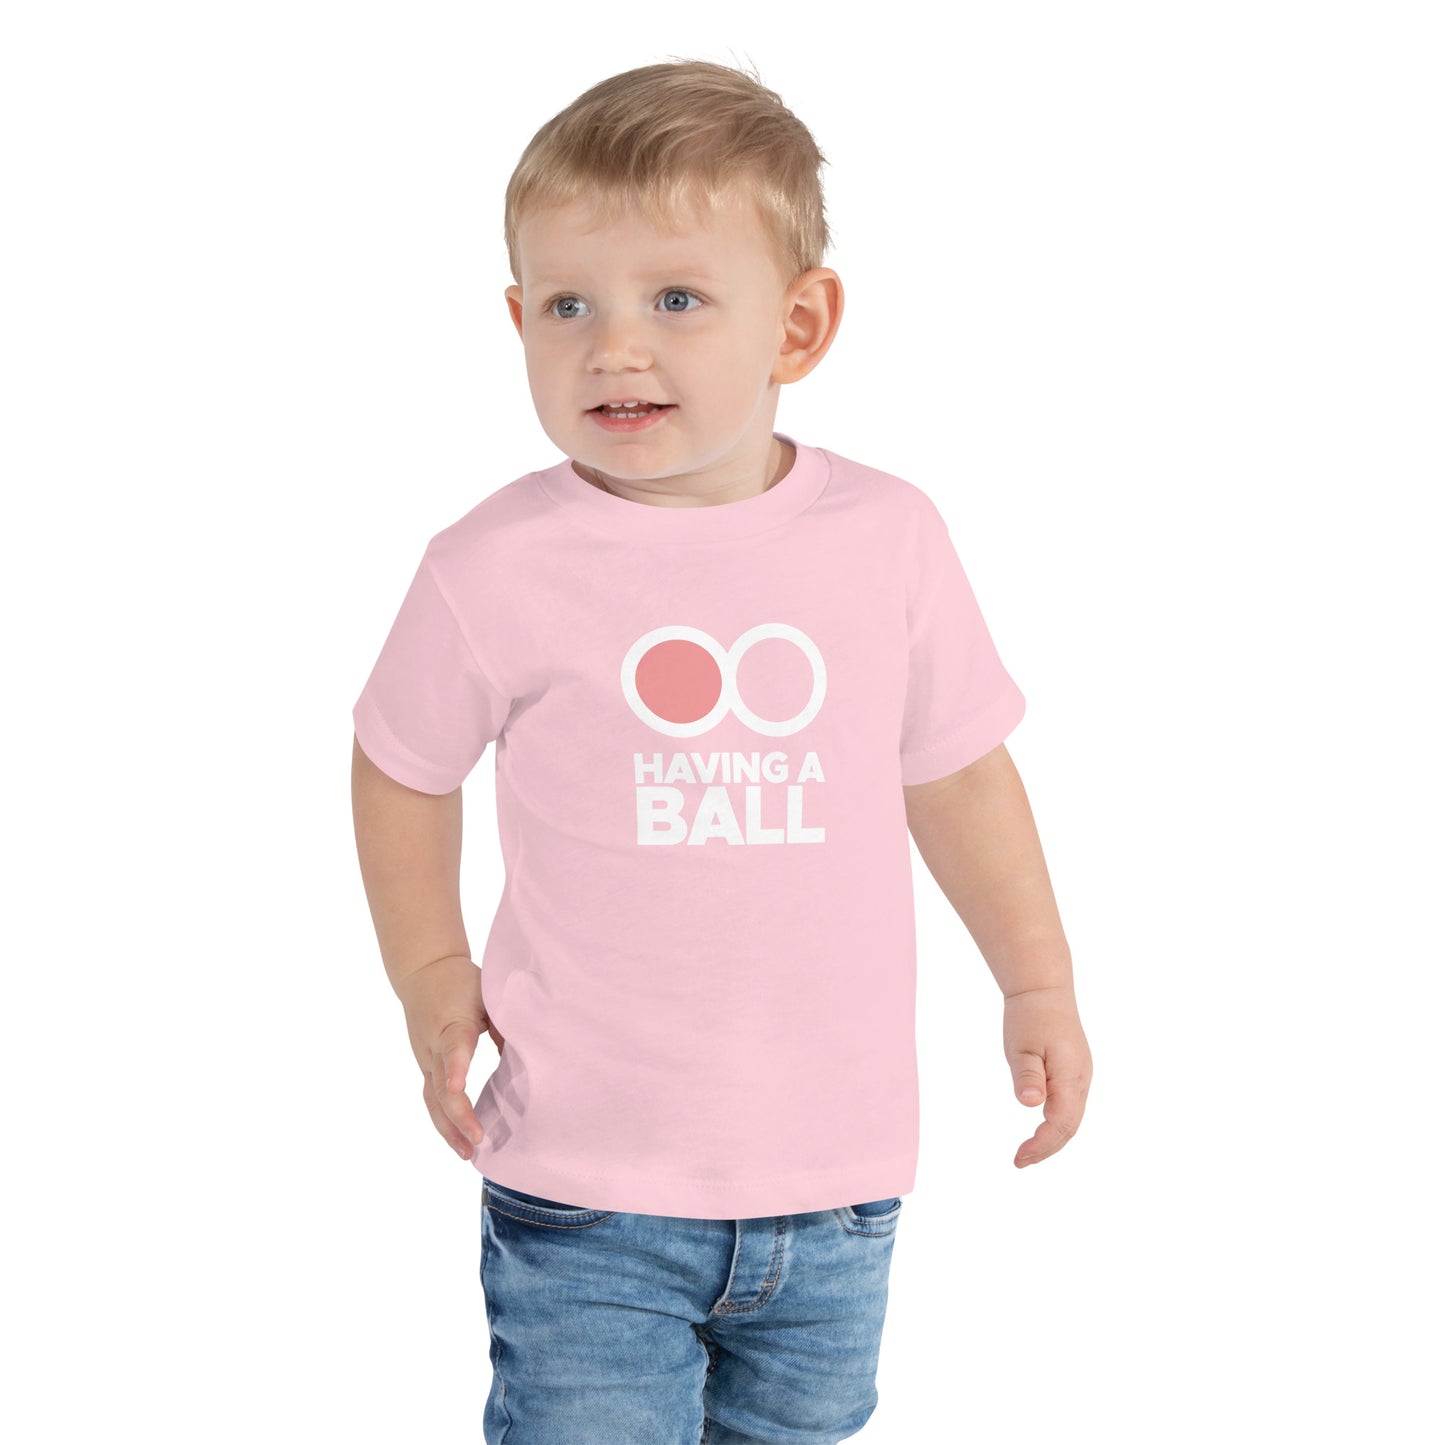 Having A Ball - Toddler Short Sleeve Tee (White Logo)